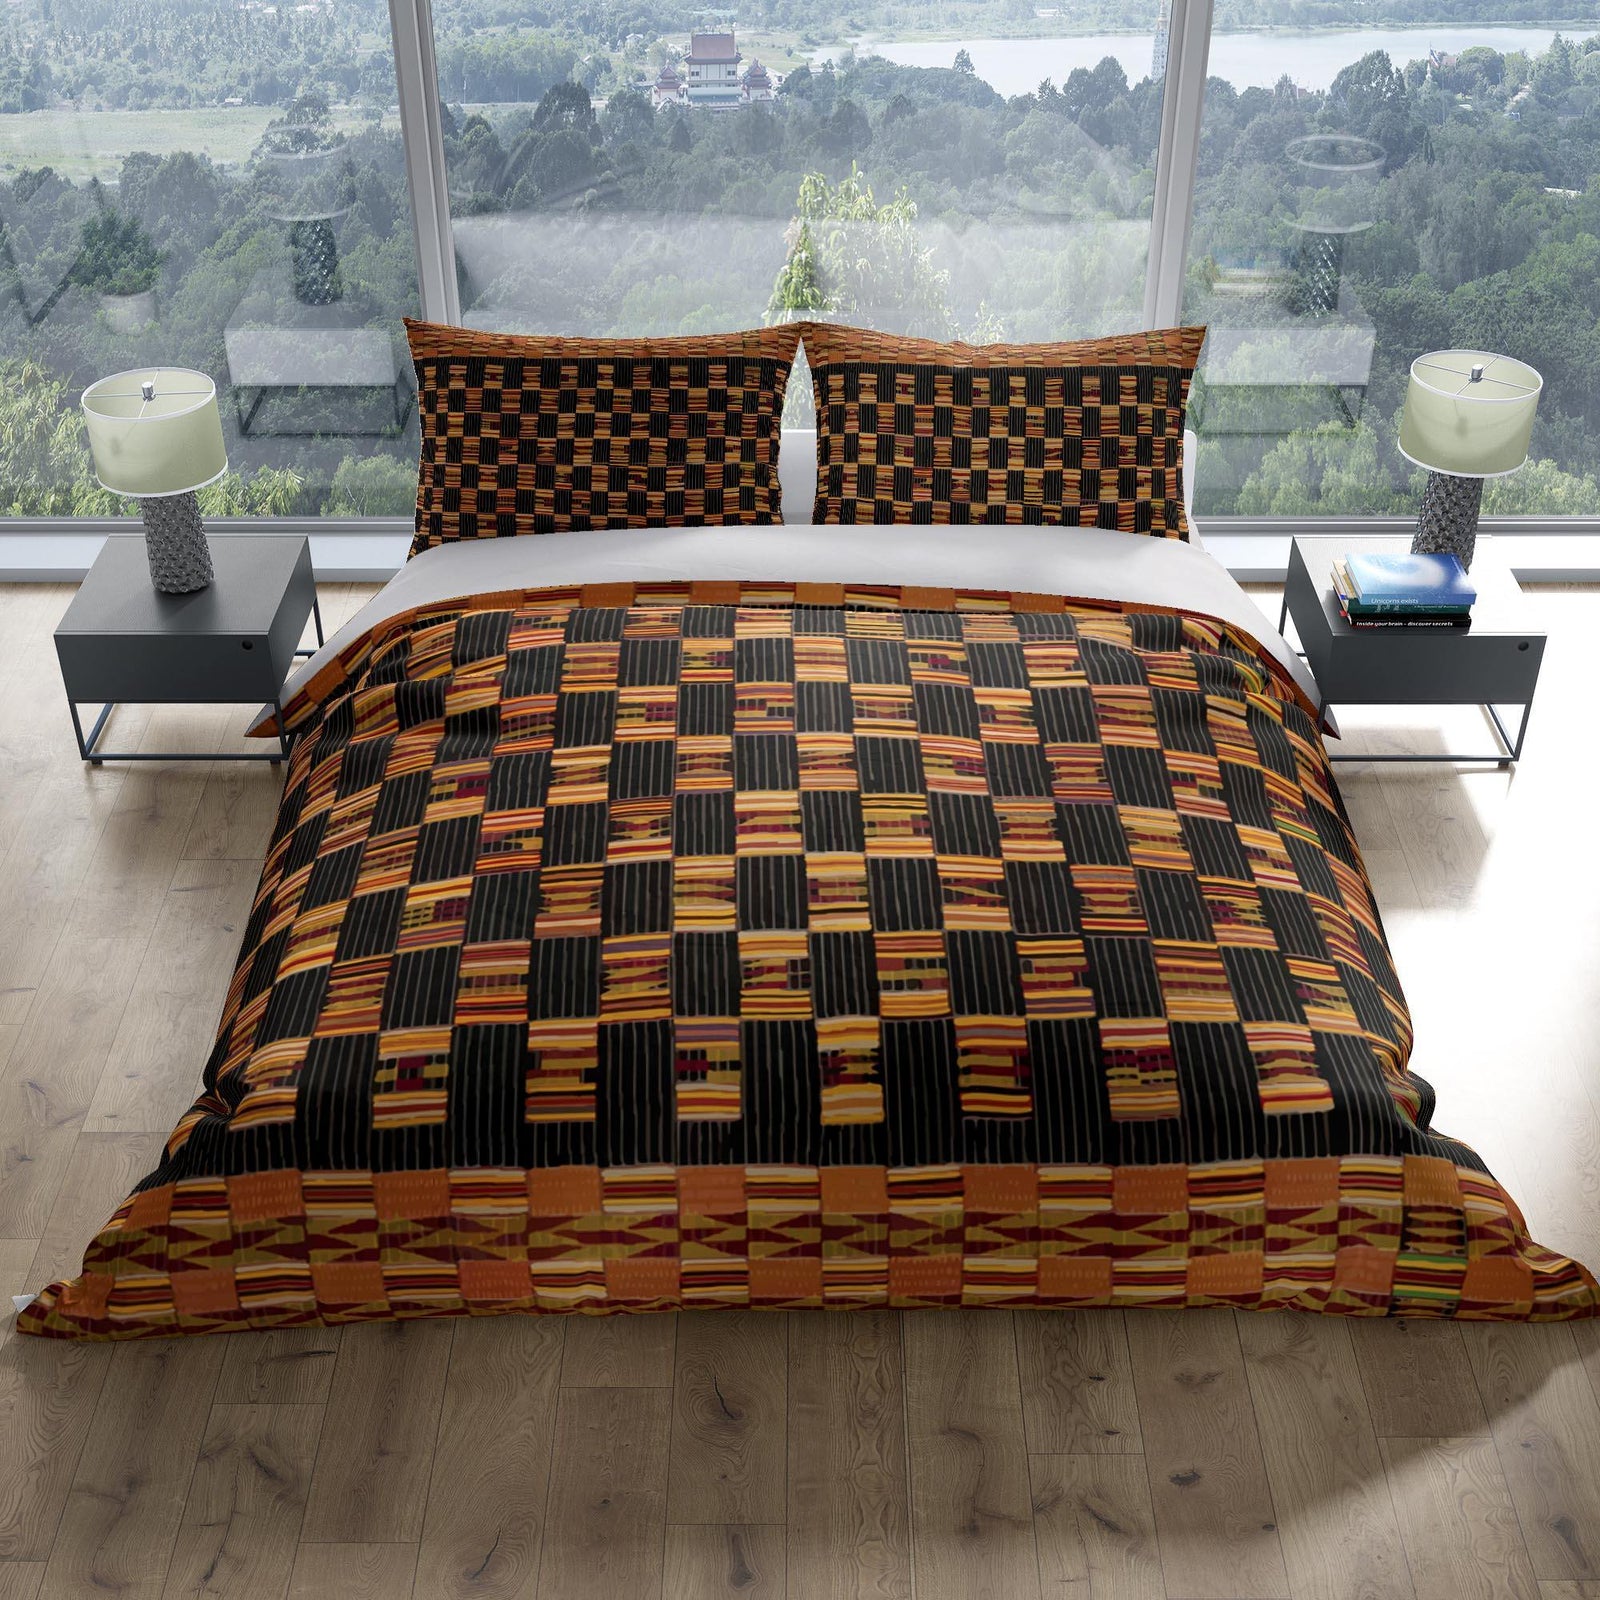 Bedding sets US Full Bedding Set, Kente-Cloth African Inspired Design